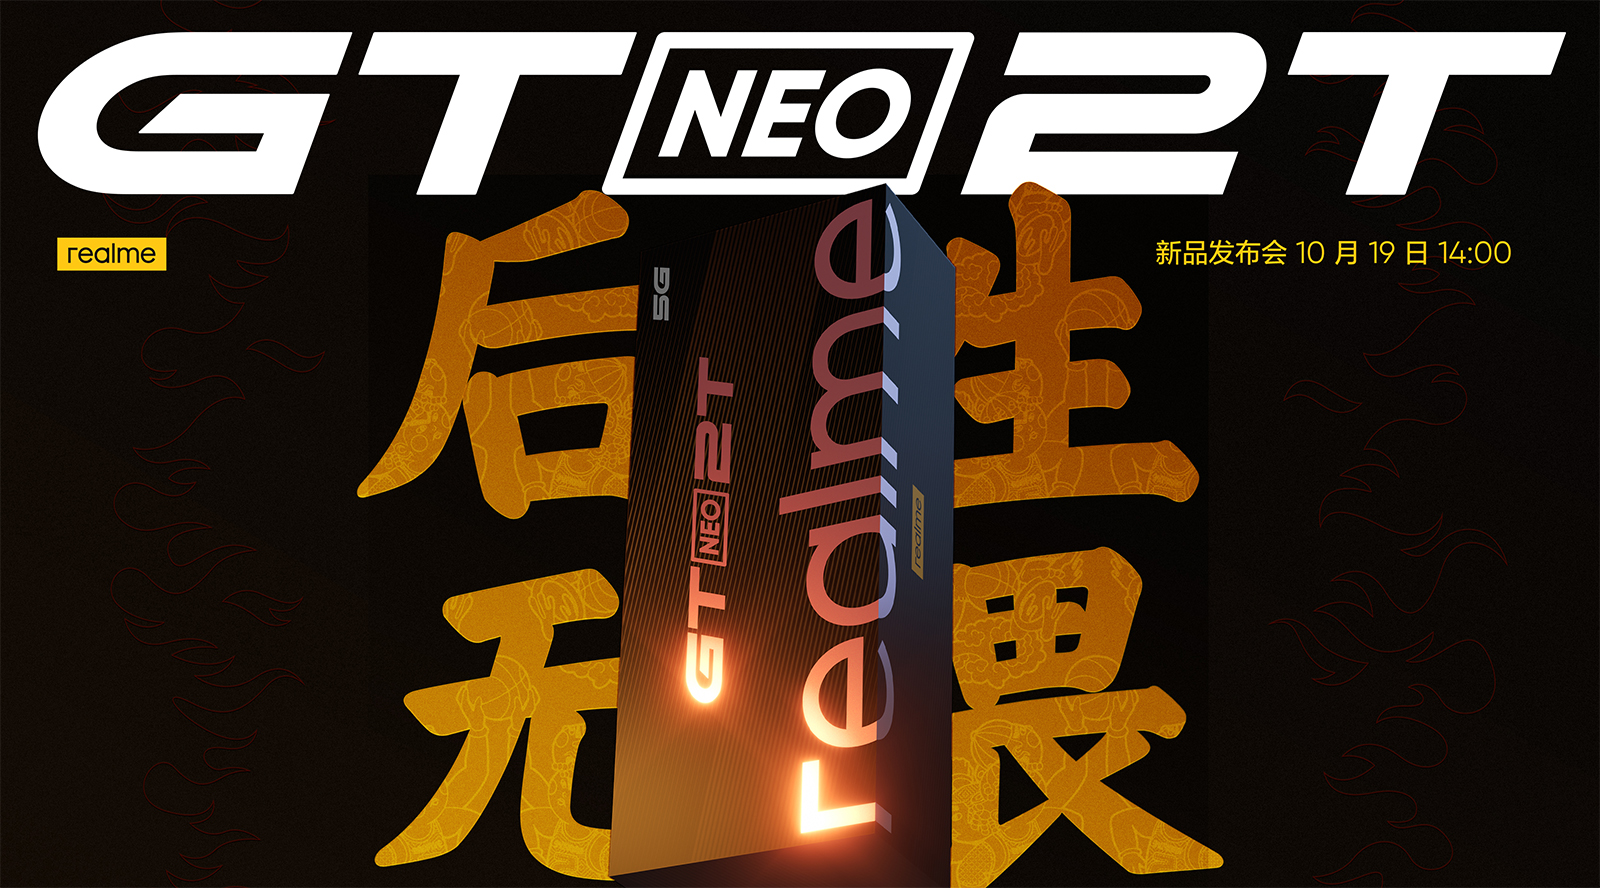 后生无畏 realme真我GT Neo2T新品发布会